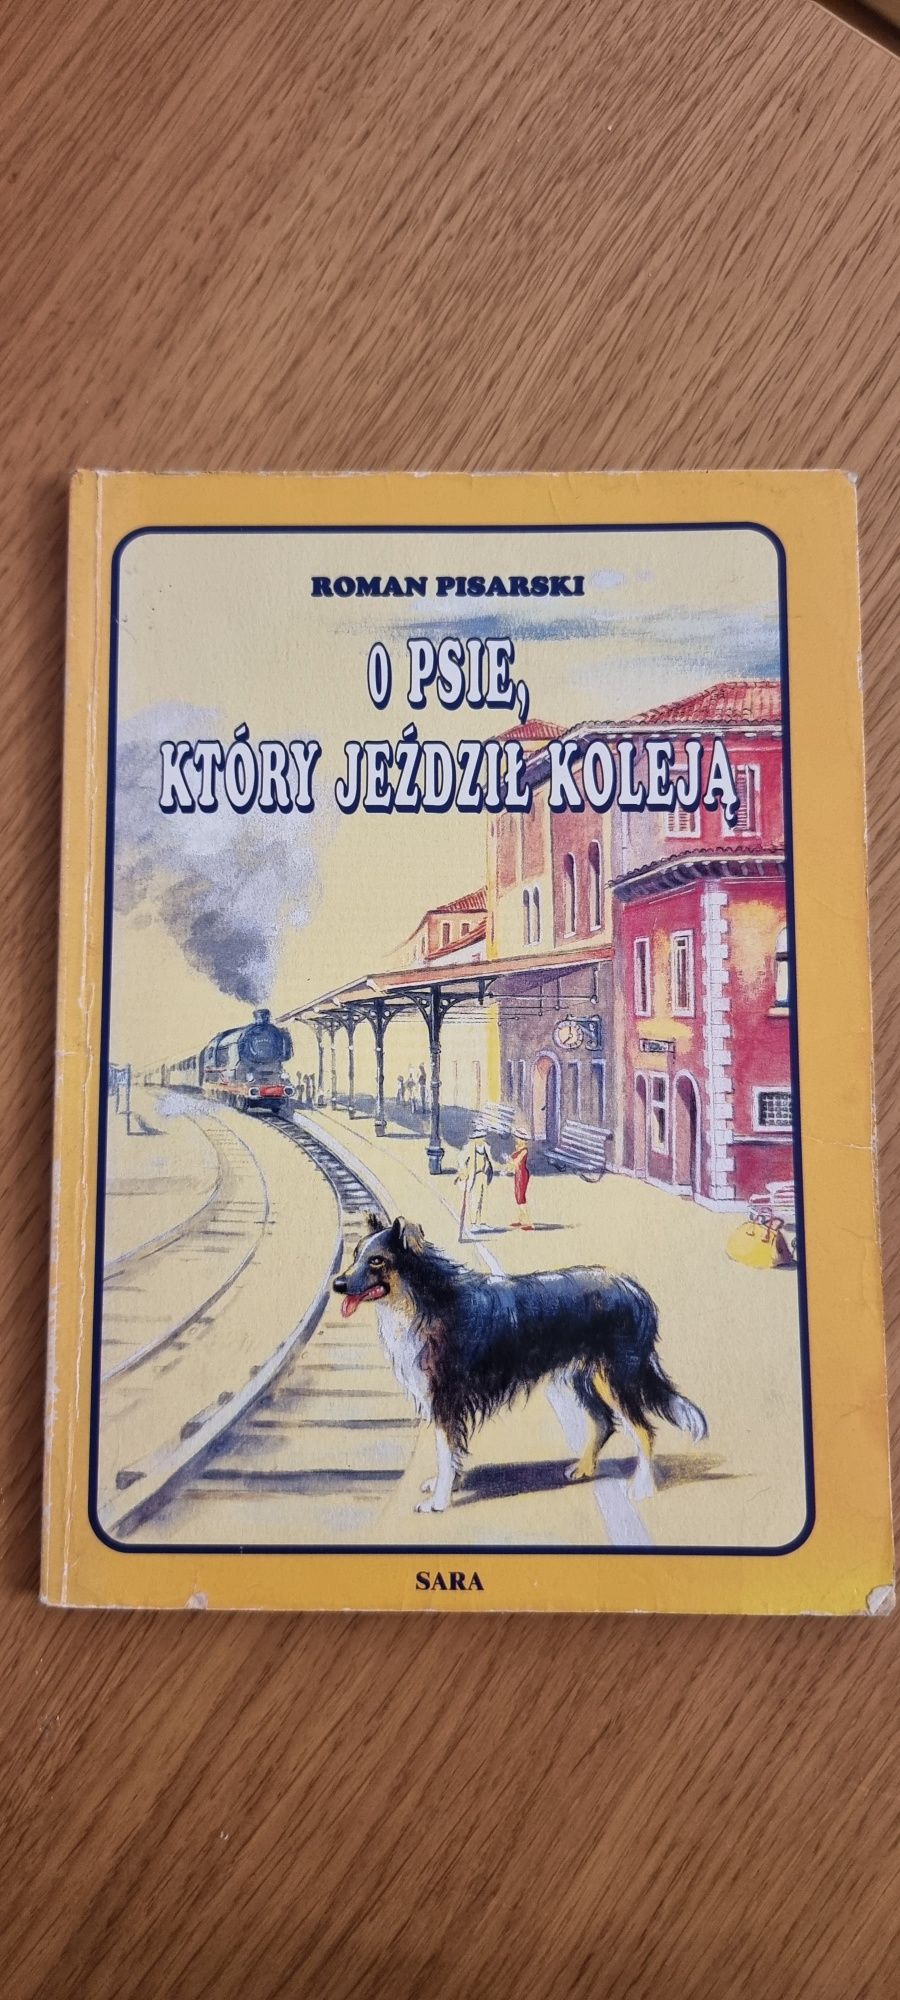 Roman Pisarski "O psie który jeździł koleją"